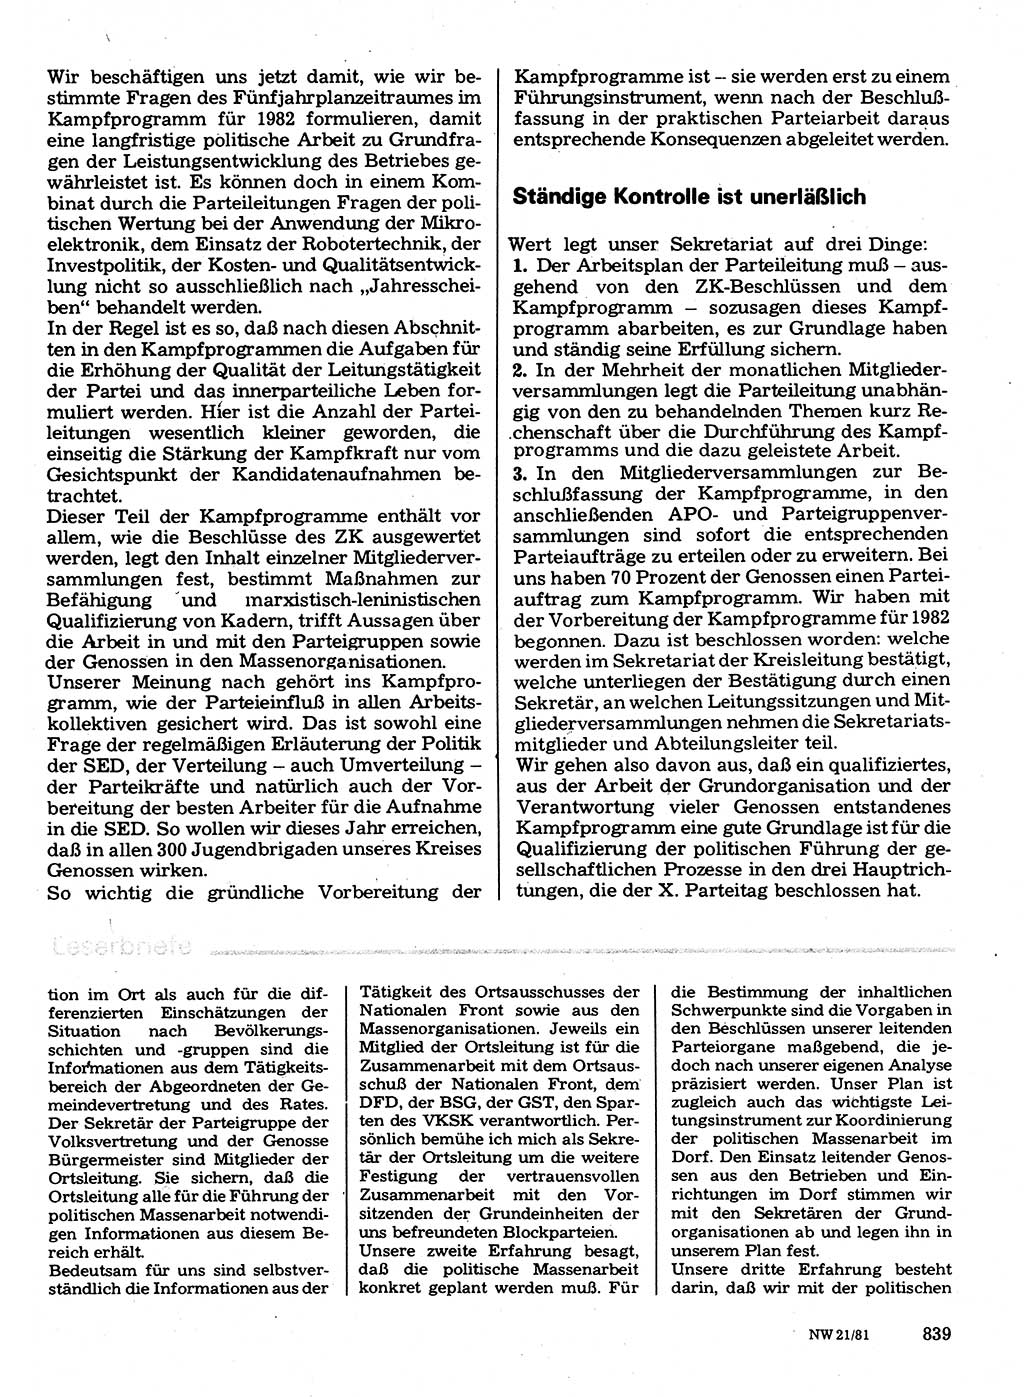 Neuer Weg (NW), Organ des Zentralkomitees (ZK) der SED (Sozialistische Einheitspartei Deutschlands) für Fragen des Parteilebens, 36. Jahrgang [Deutsche Demokratische Republik (DDR)] 1981, Seite 839 (NW ZK SED DDR 1981, S. 839)